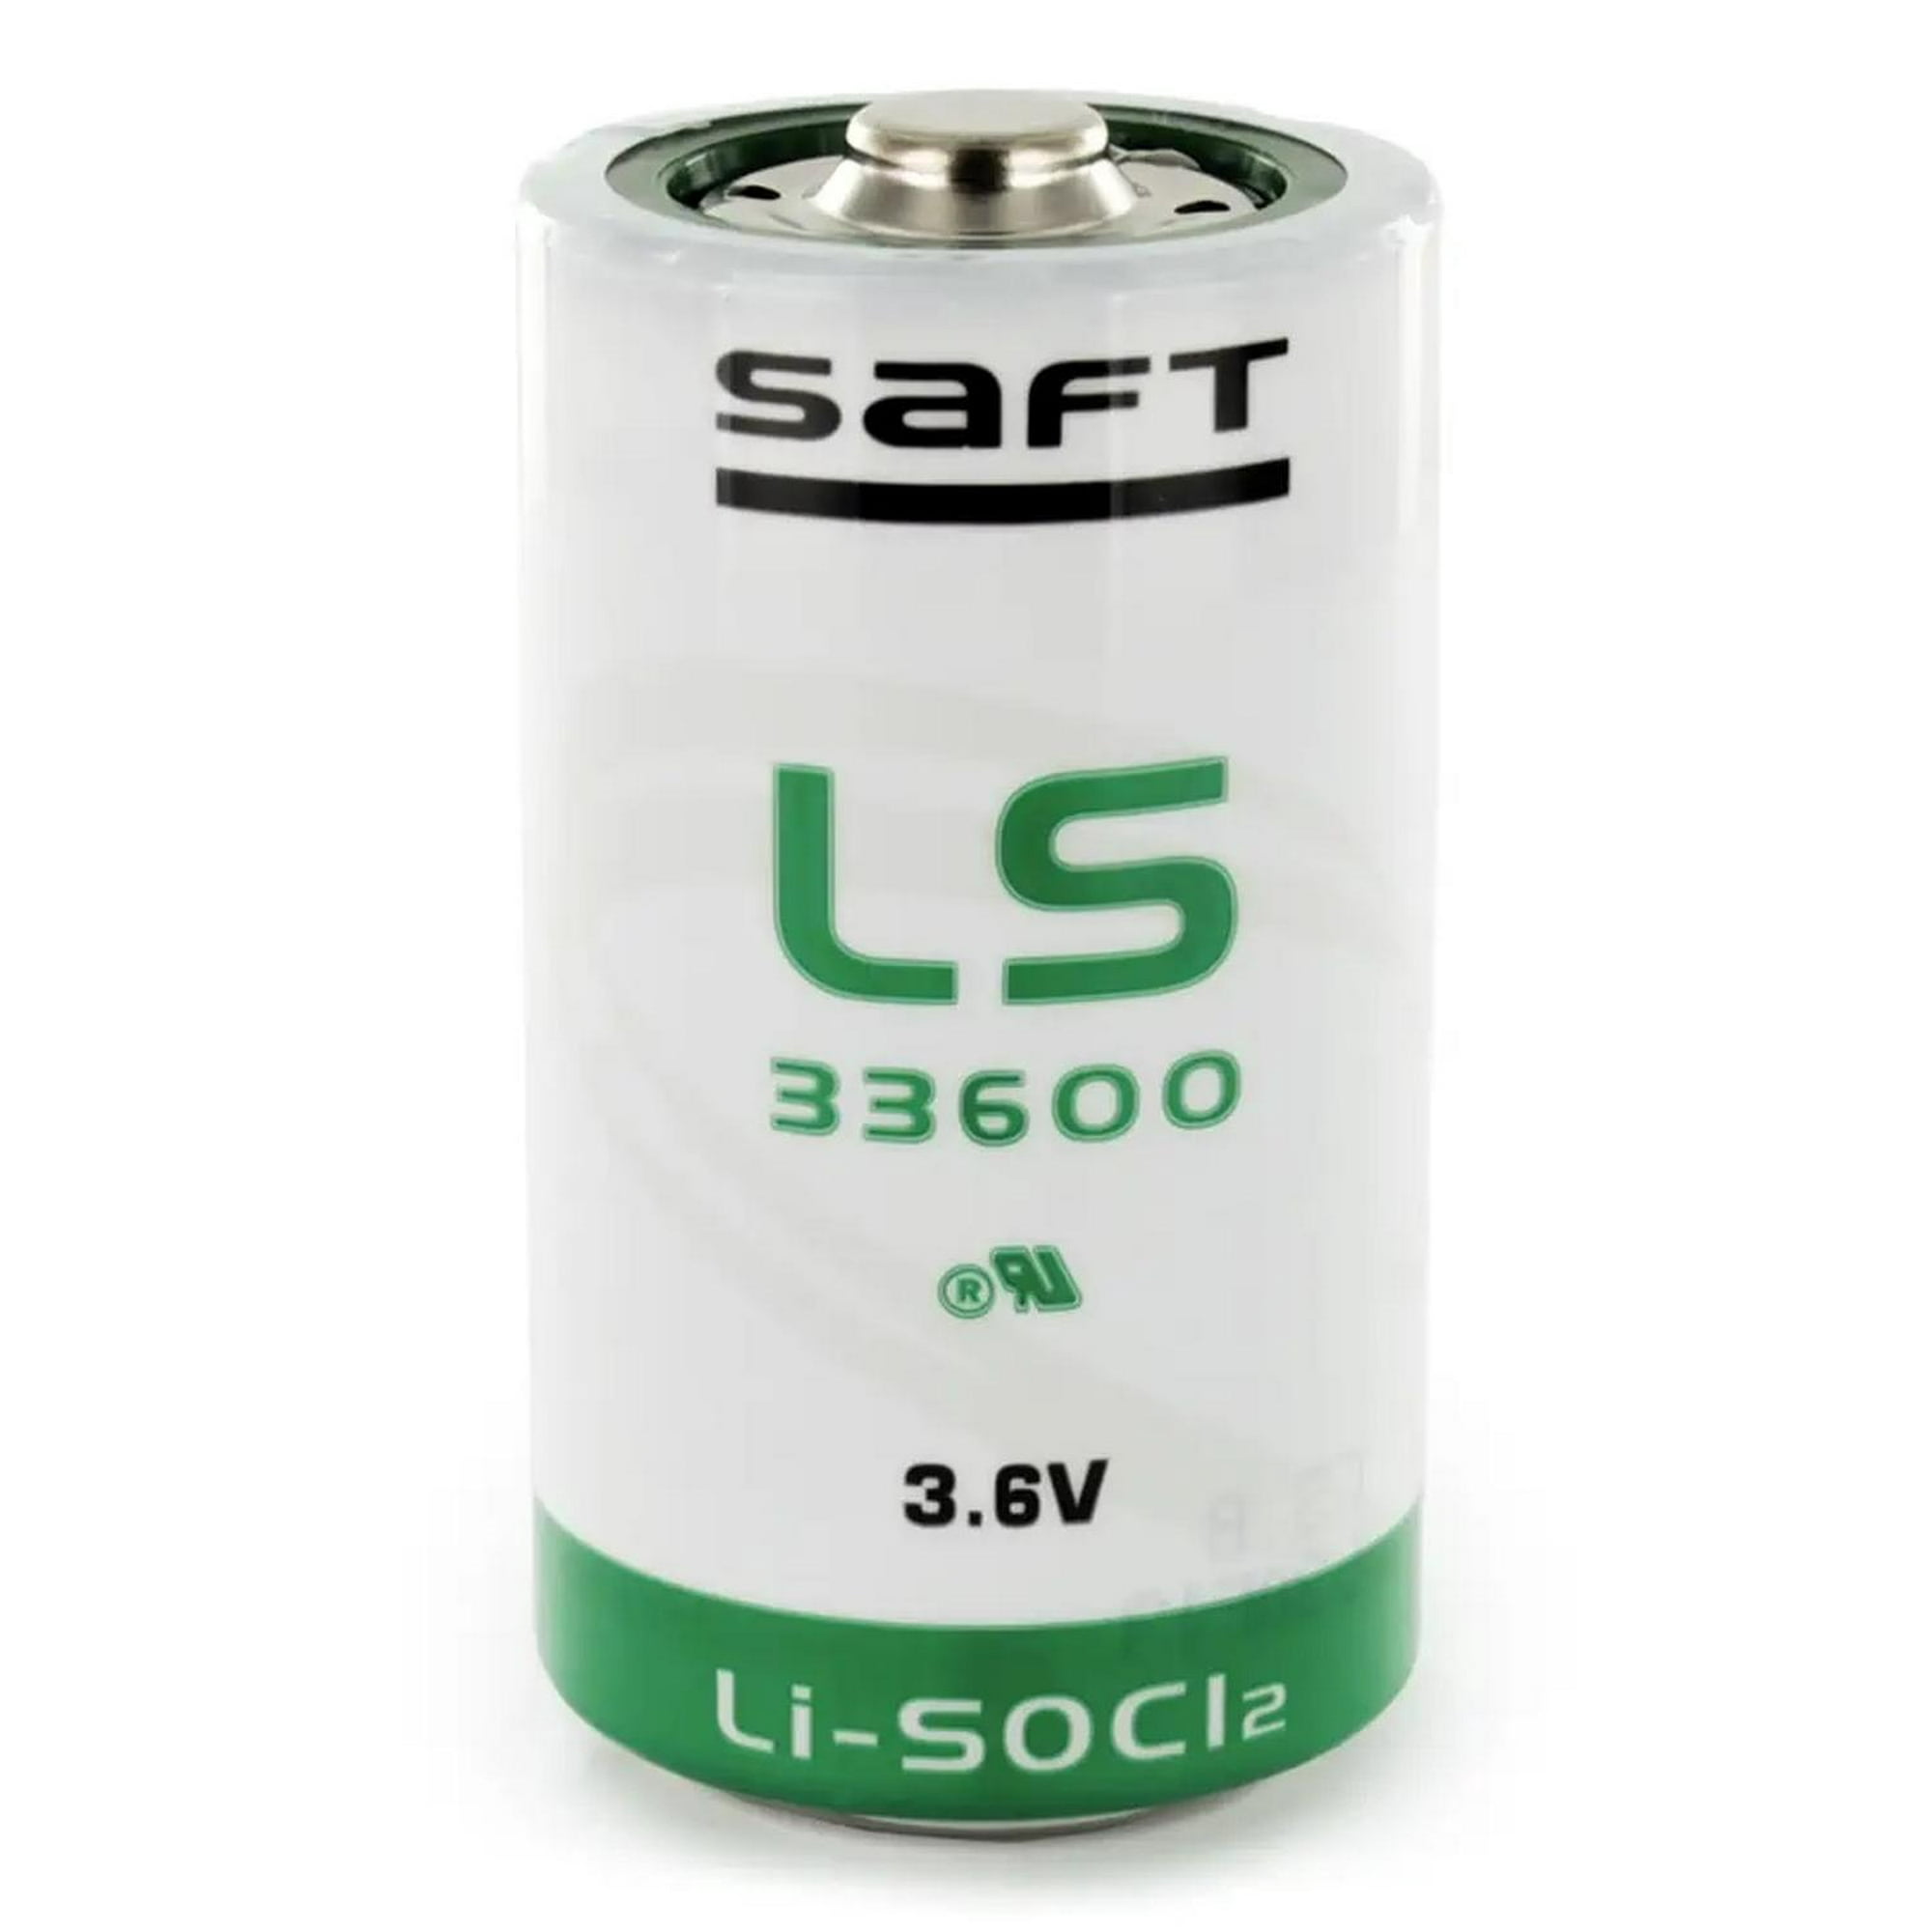 Pila litio industrial LS14500 AA 3.6V 2.6Ah